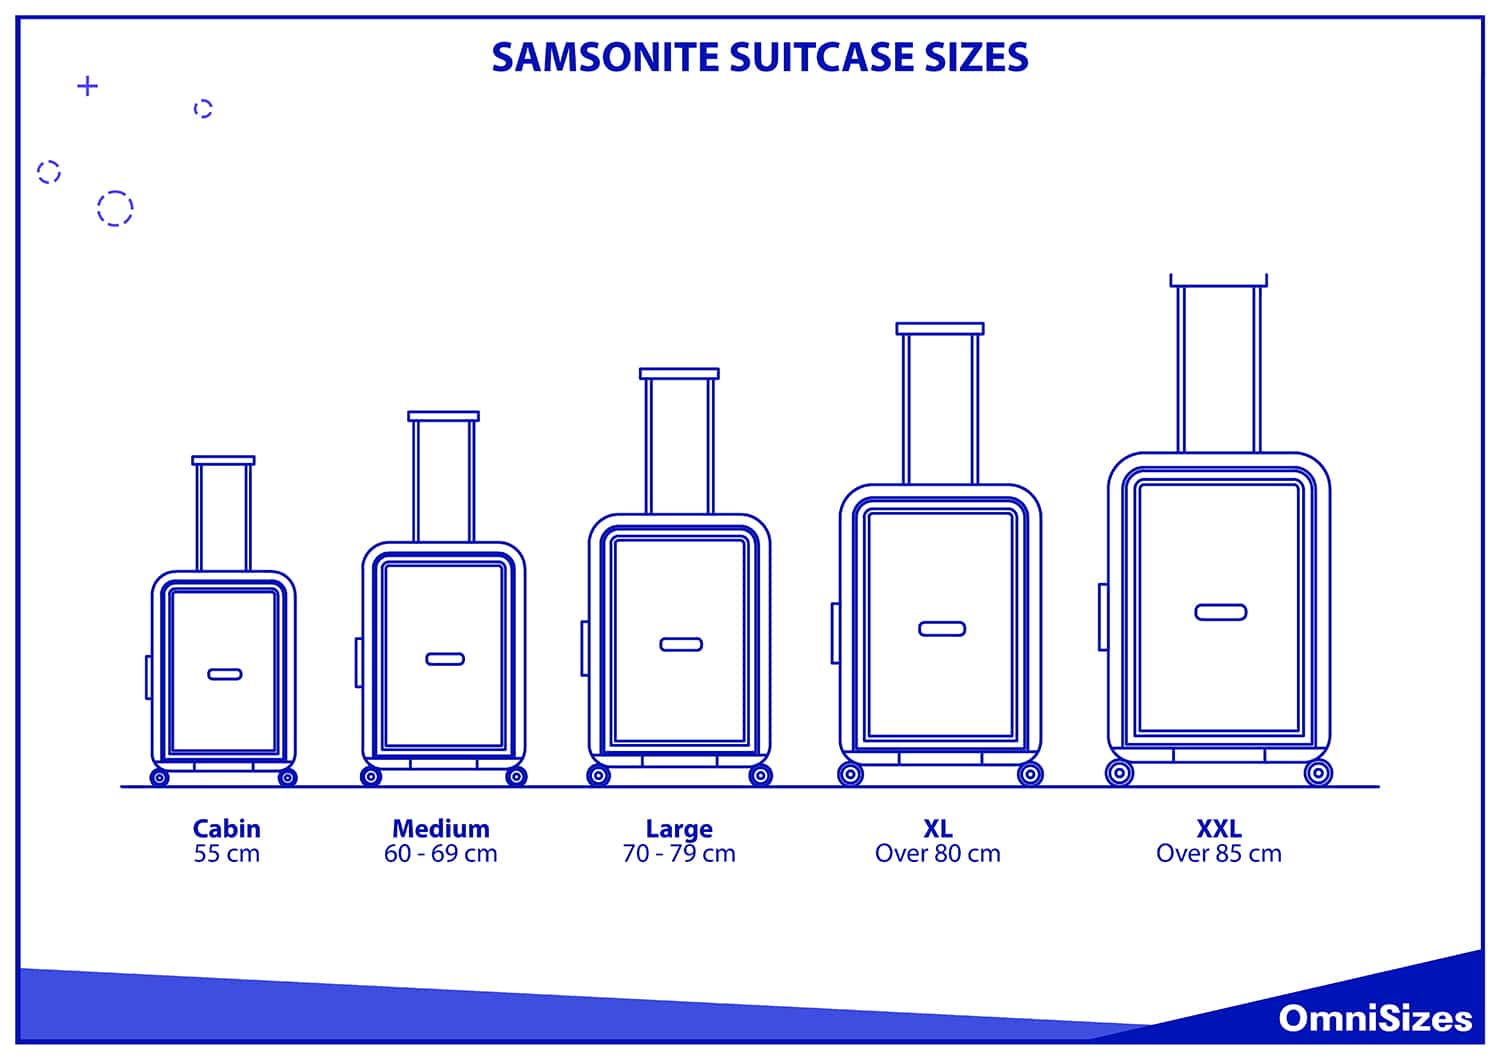 Samsonite suitcase sizes